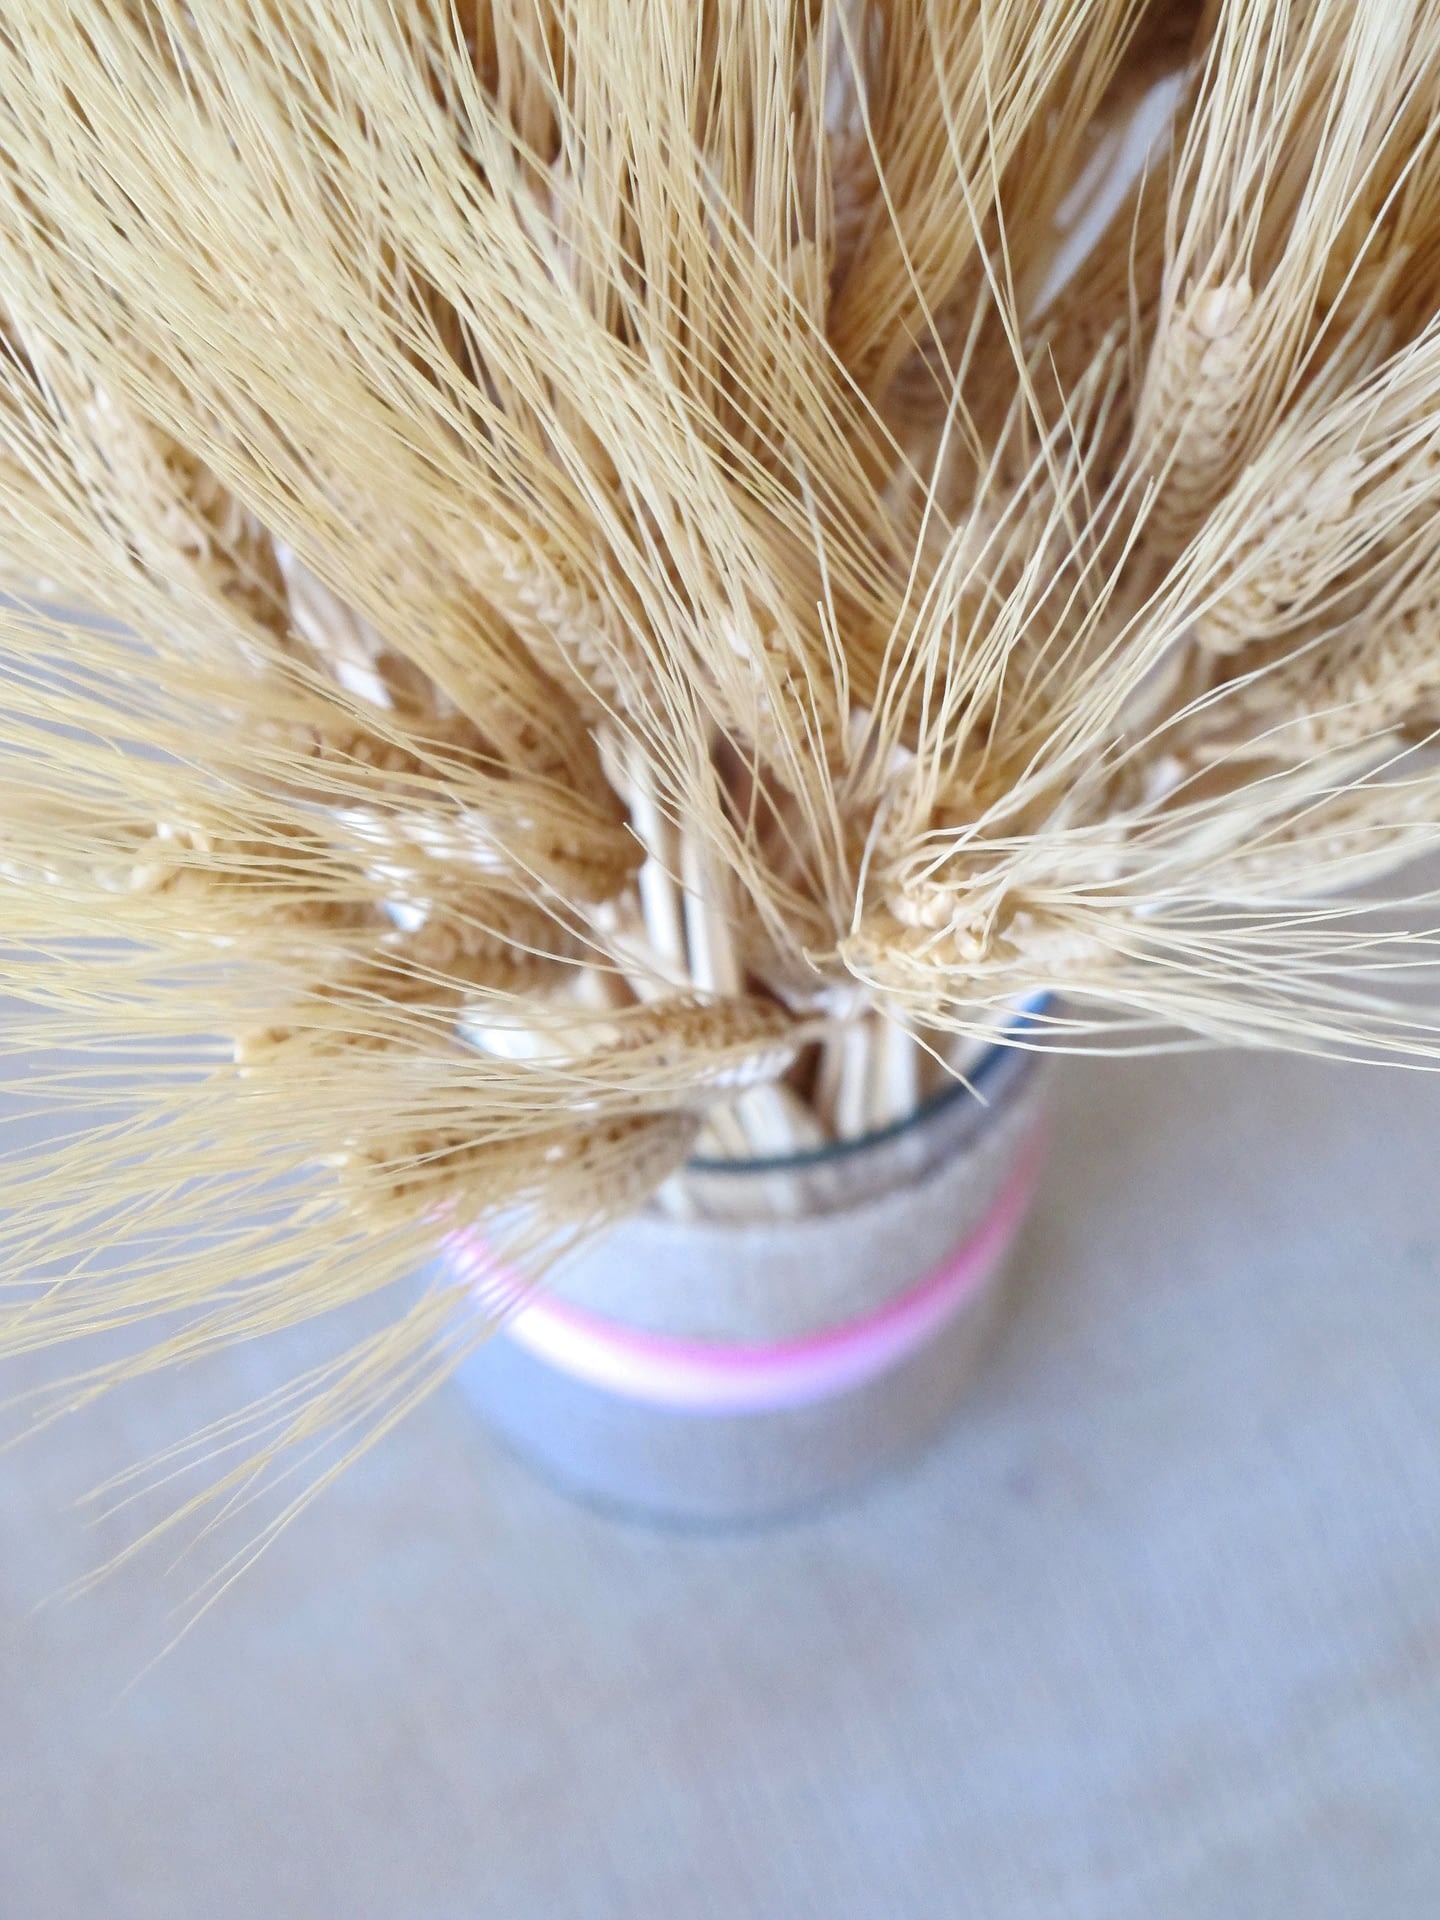 Mega Challah Bake – Wheat Bundles! – CHANA'S ART ROOM